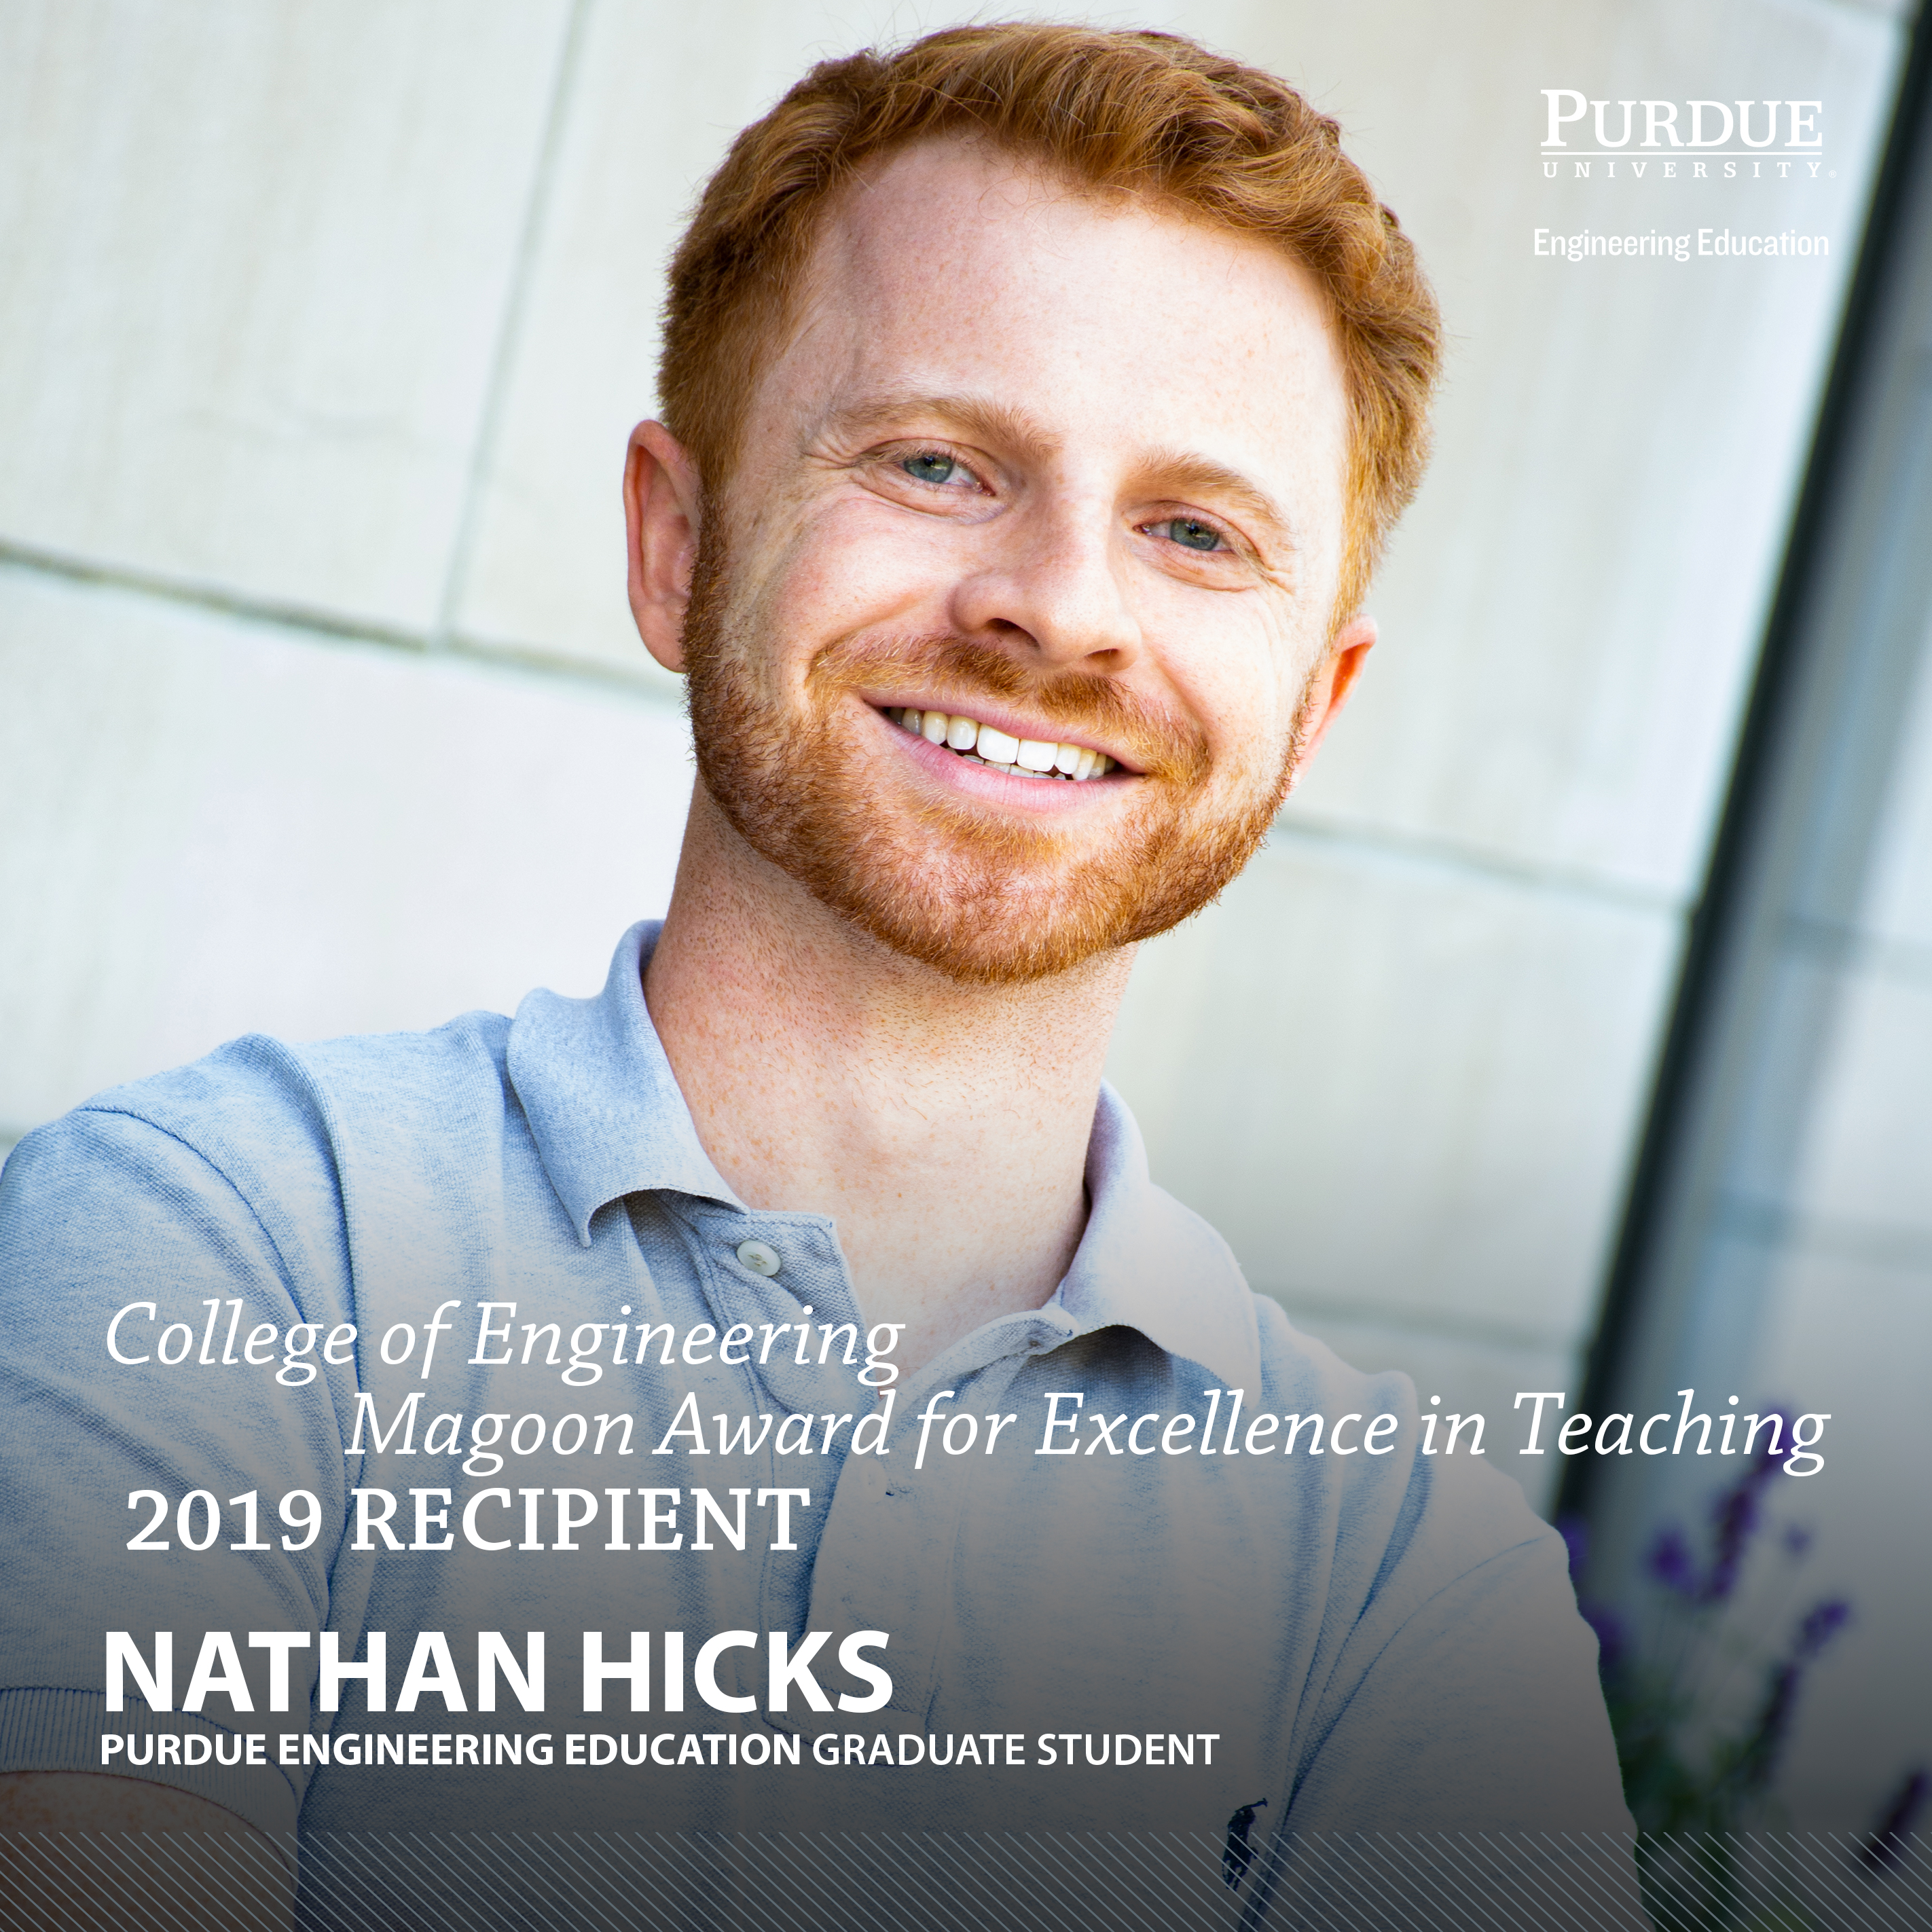 Nathan Hicks